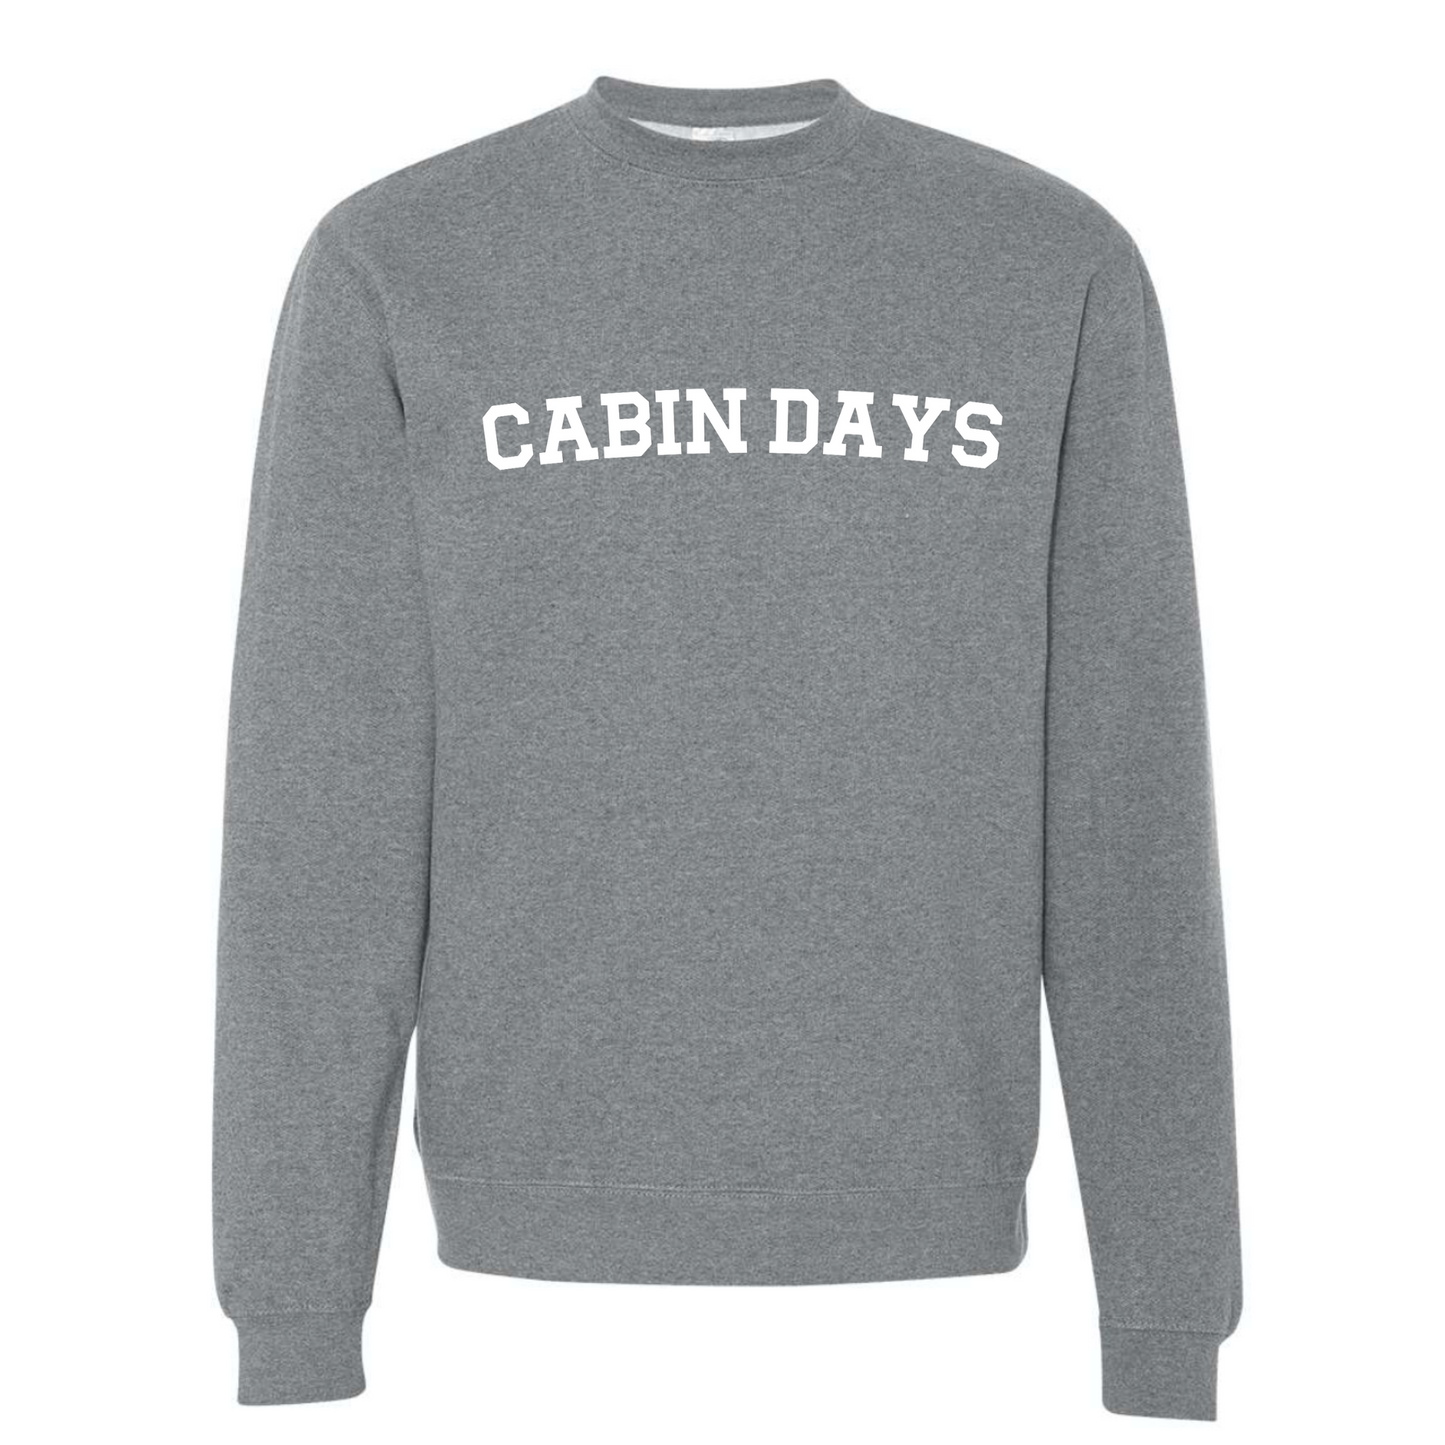 Cabin Days - Pull Over Sweatshirt front view sweatshirt.